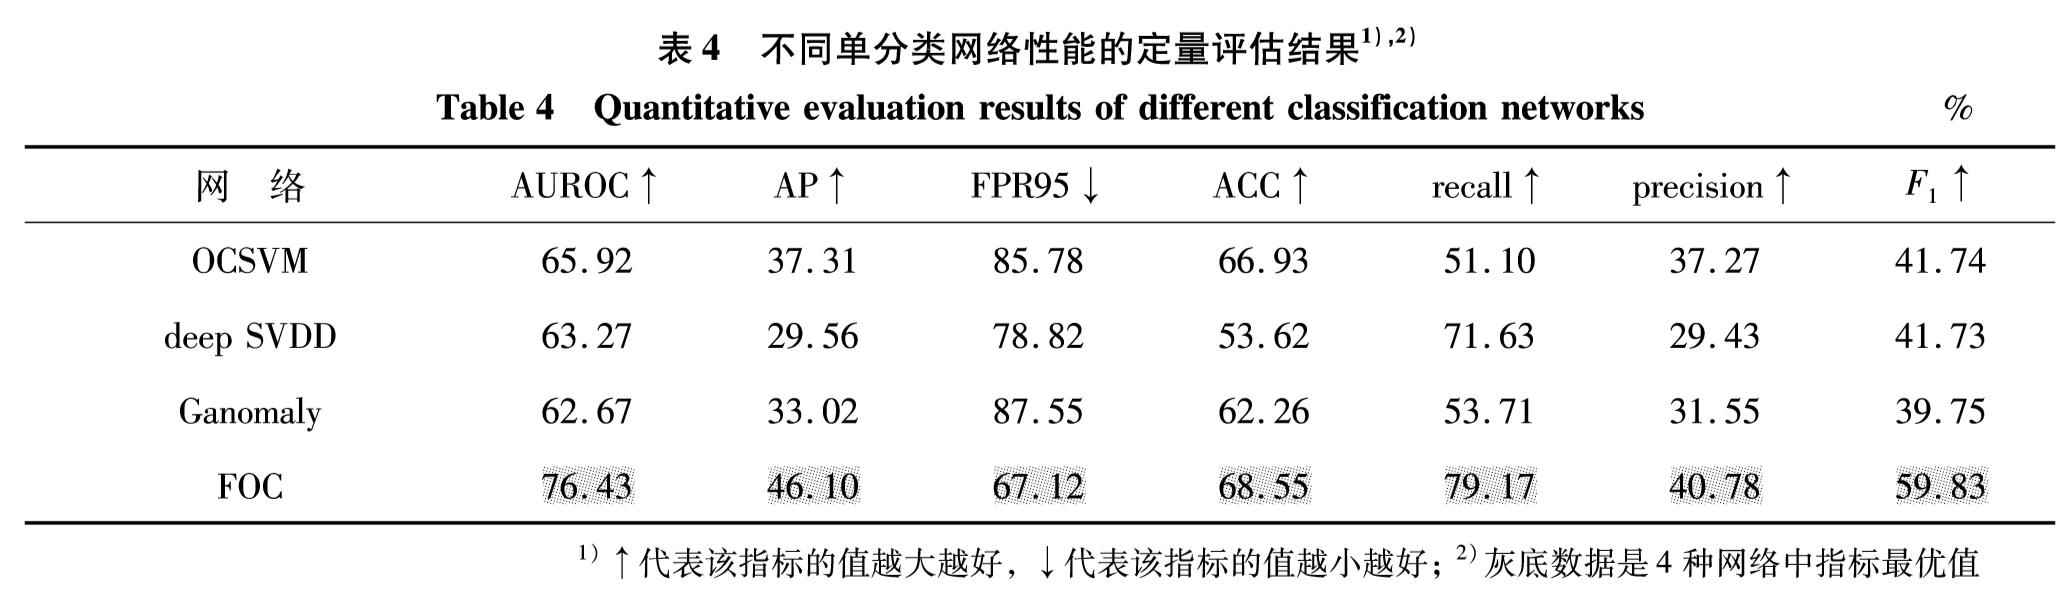 表4 不同单分类网络性能的定量评估结果1),2)<br/>Table 4 Quantitative evaluation results of different classification networks%